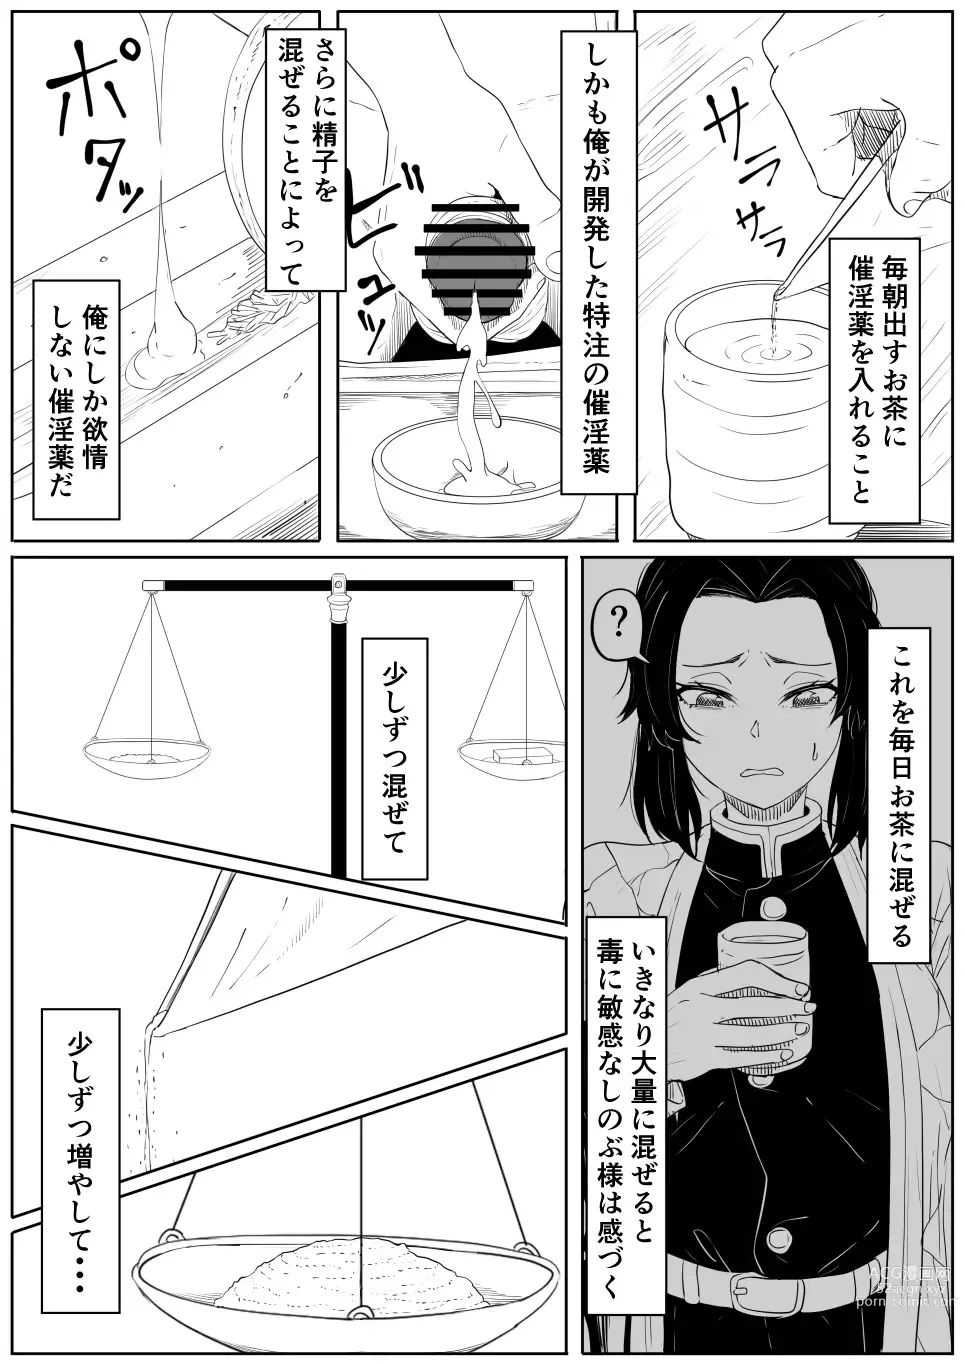 Page 4 of doujinshi Shinobu wa Muchuu